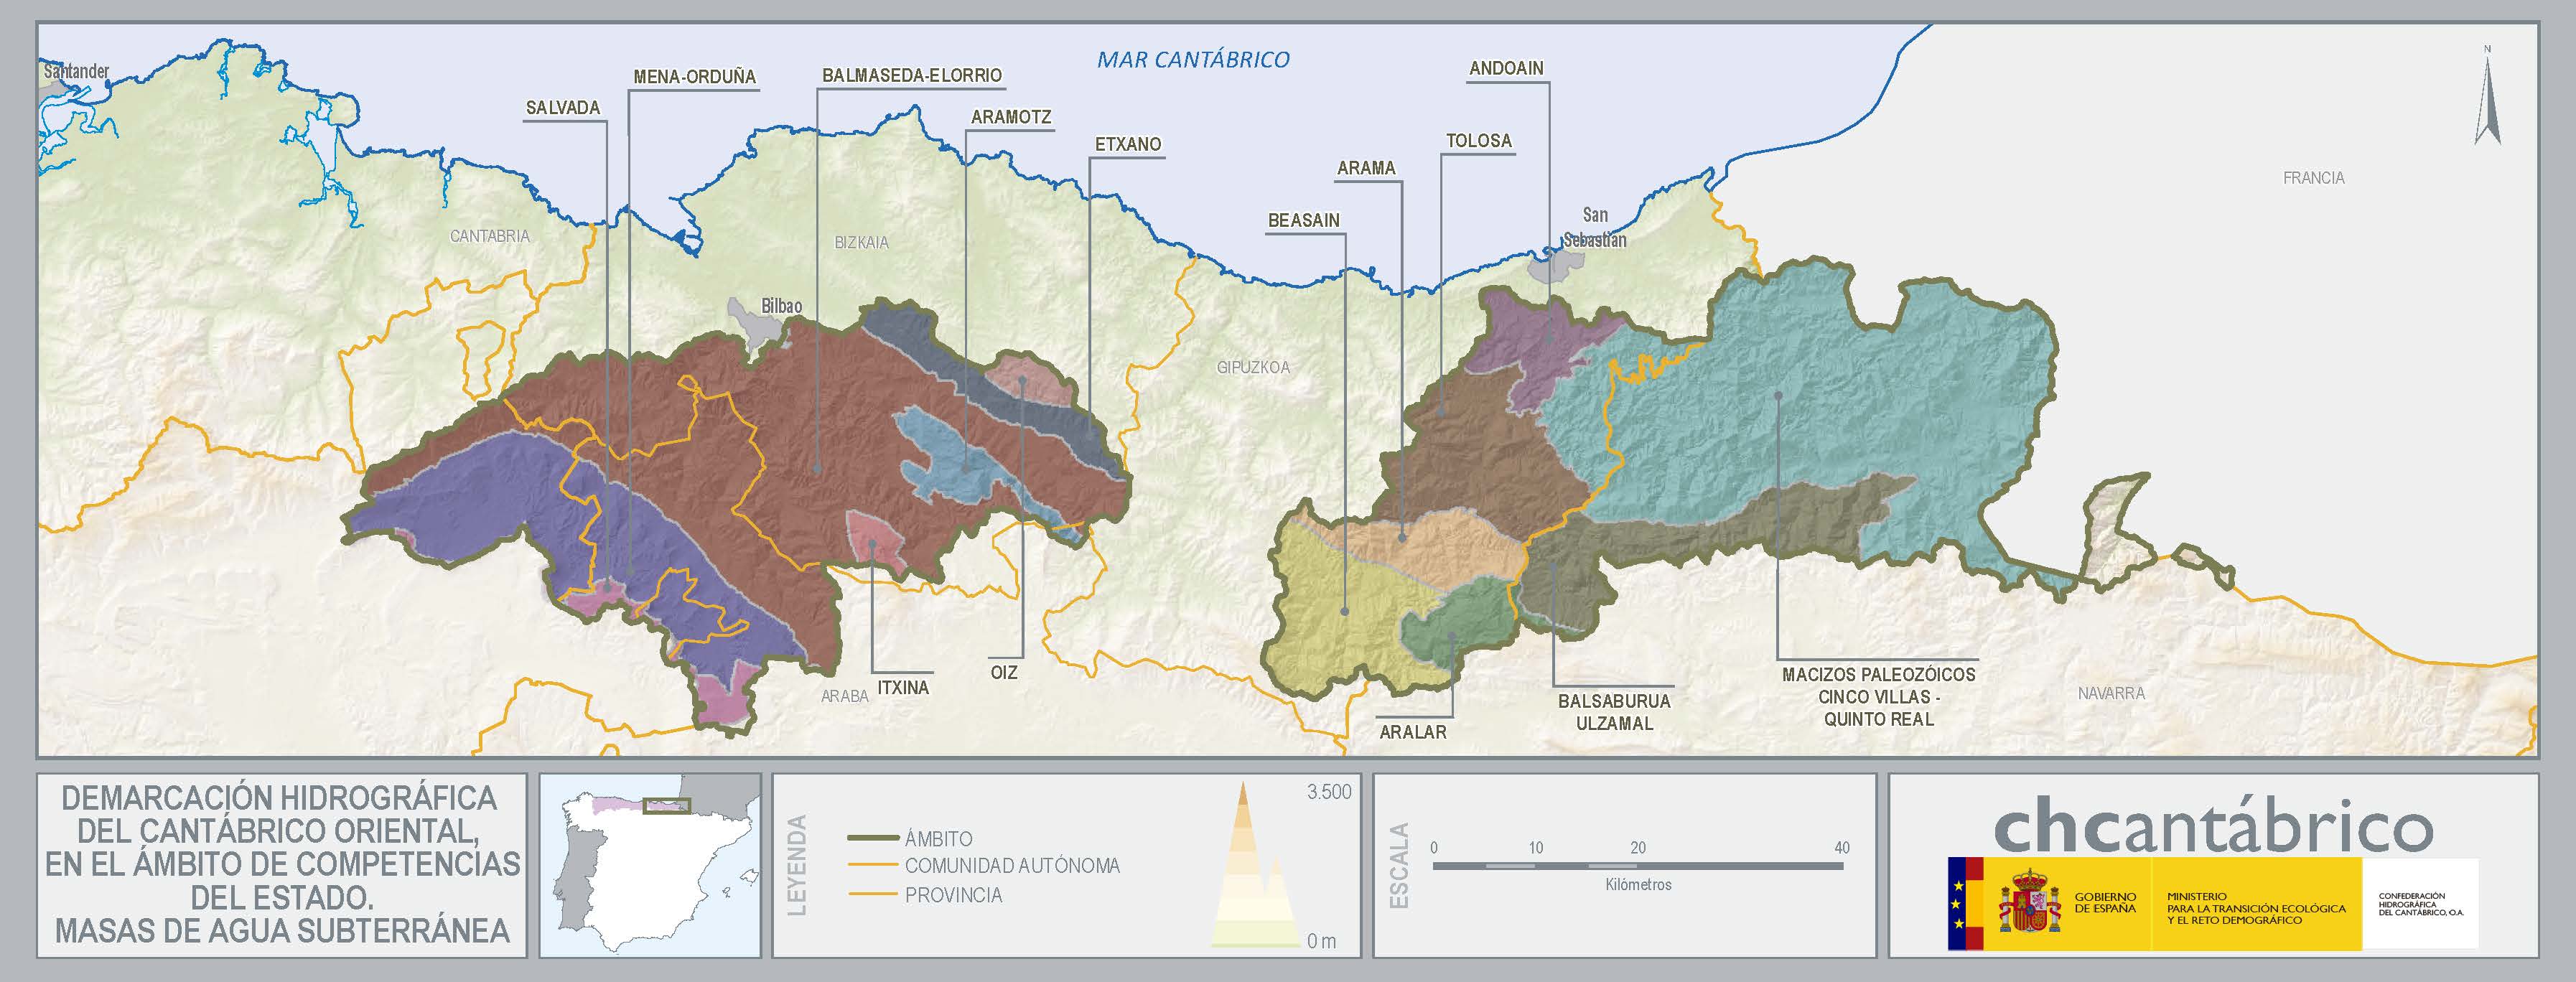 Mapa de la demarcación hidrográfica del cantábrico oriental, en el ámbito de competencias del estado. Masas de agua subterránea